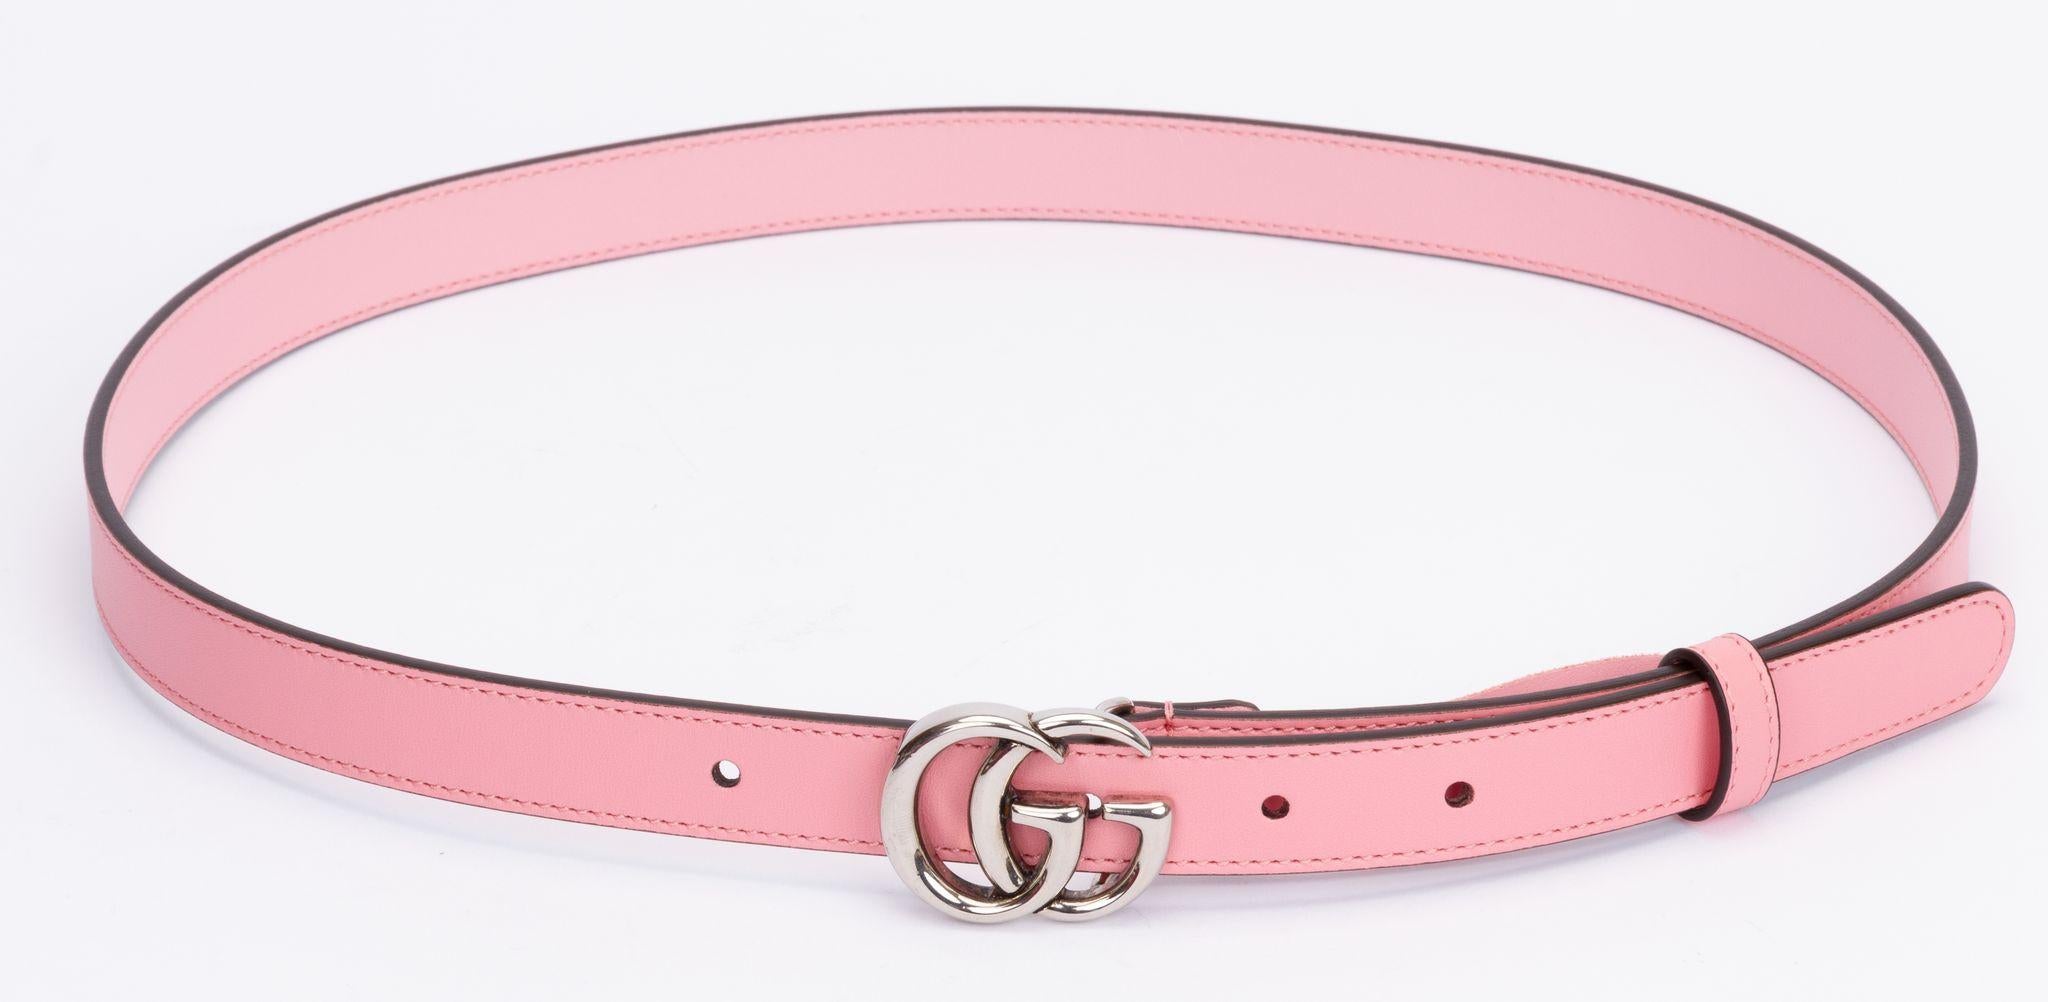 Gucci Gürtel in Rosa. Dieser schmale Gürtel ist in einem Rosé-Ton gehalten und hat als Schnalle das GG Logo in Silber. Das Stück ist neu und wird mit der originalen Schutzhülle geliefert.